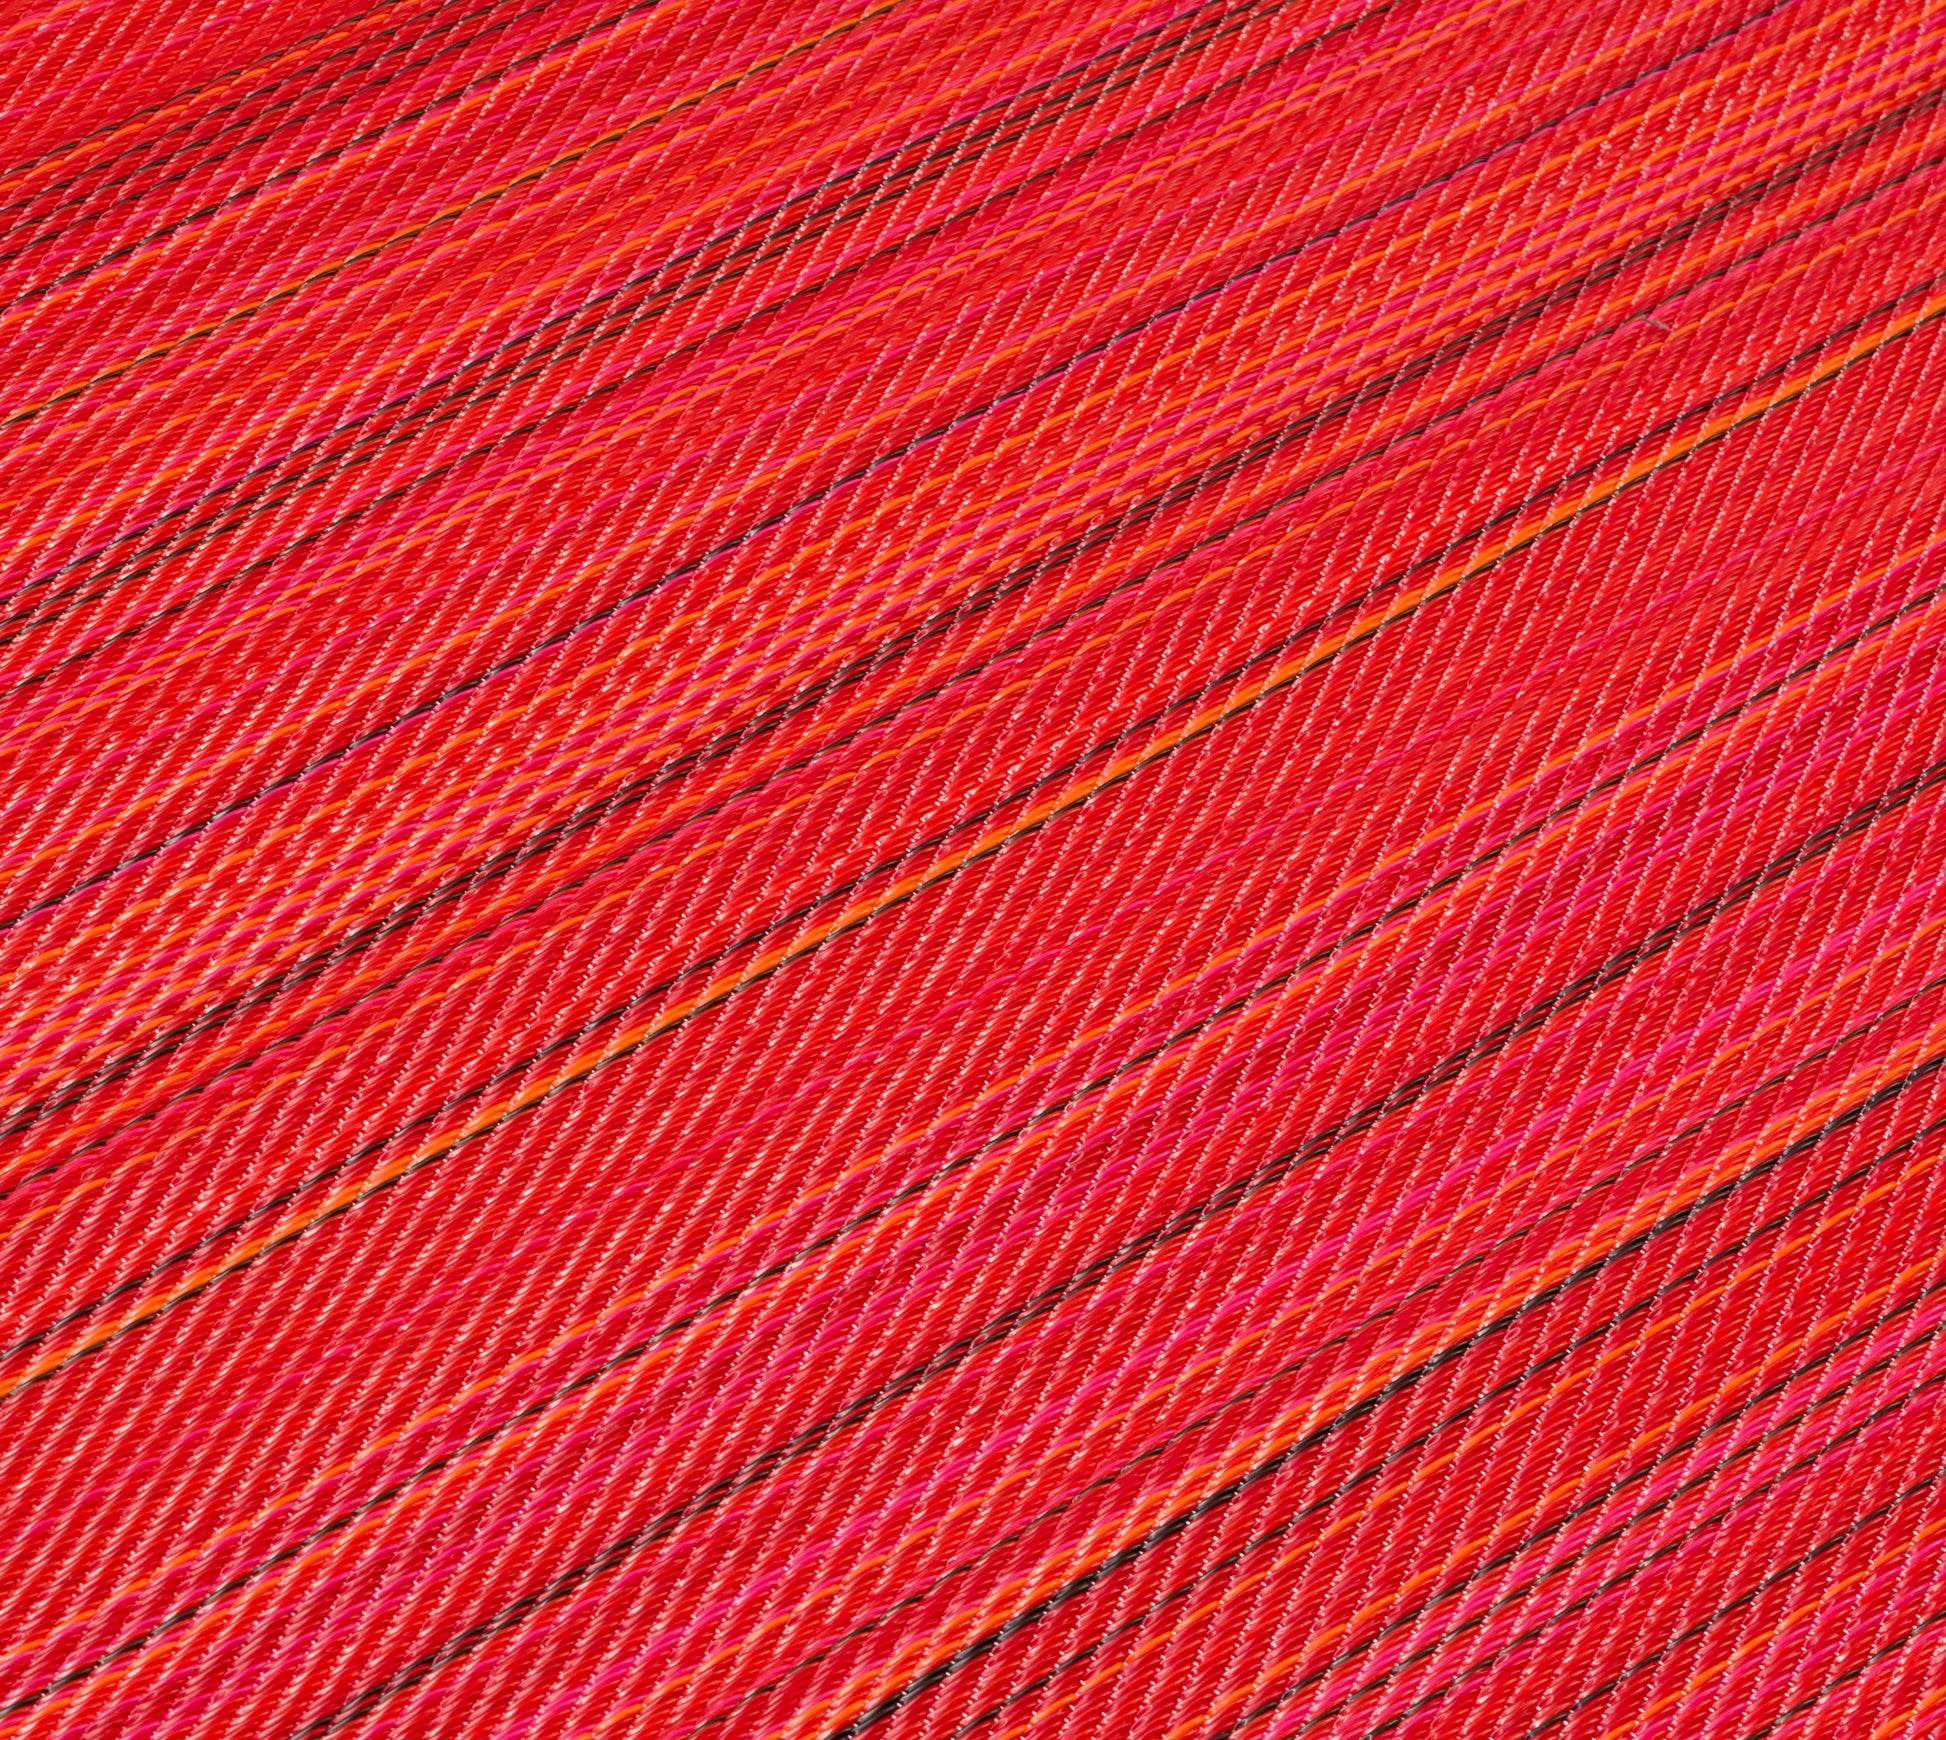 Indoor/Outdoor red Stripes Reversible Rug Outdoor Area Rug, Outdoor carpet, outdoor mat, picnic mat